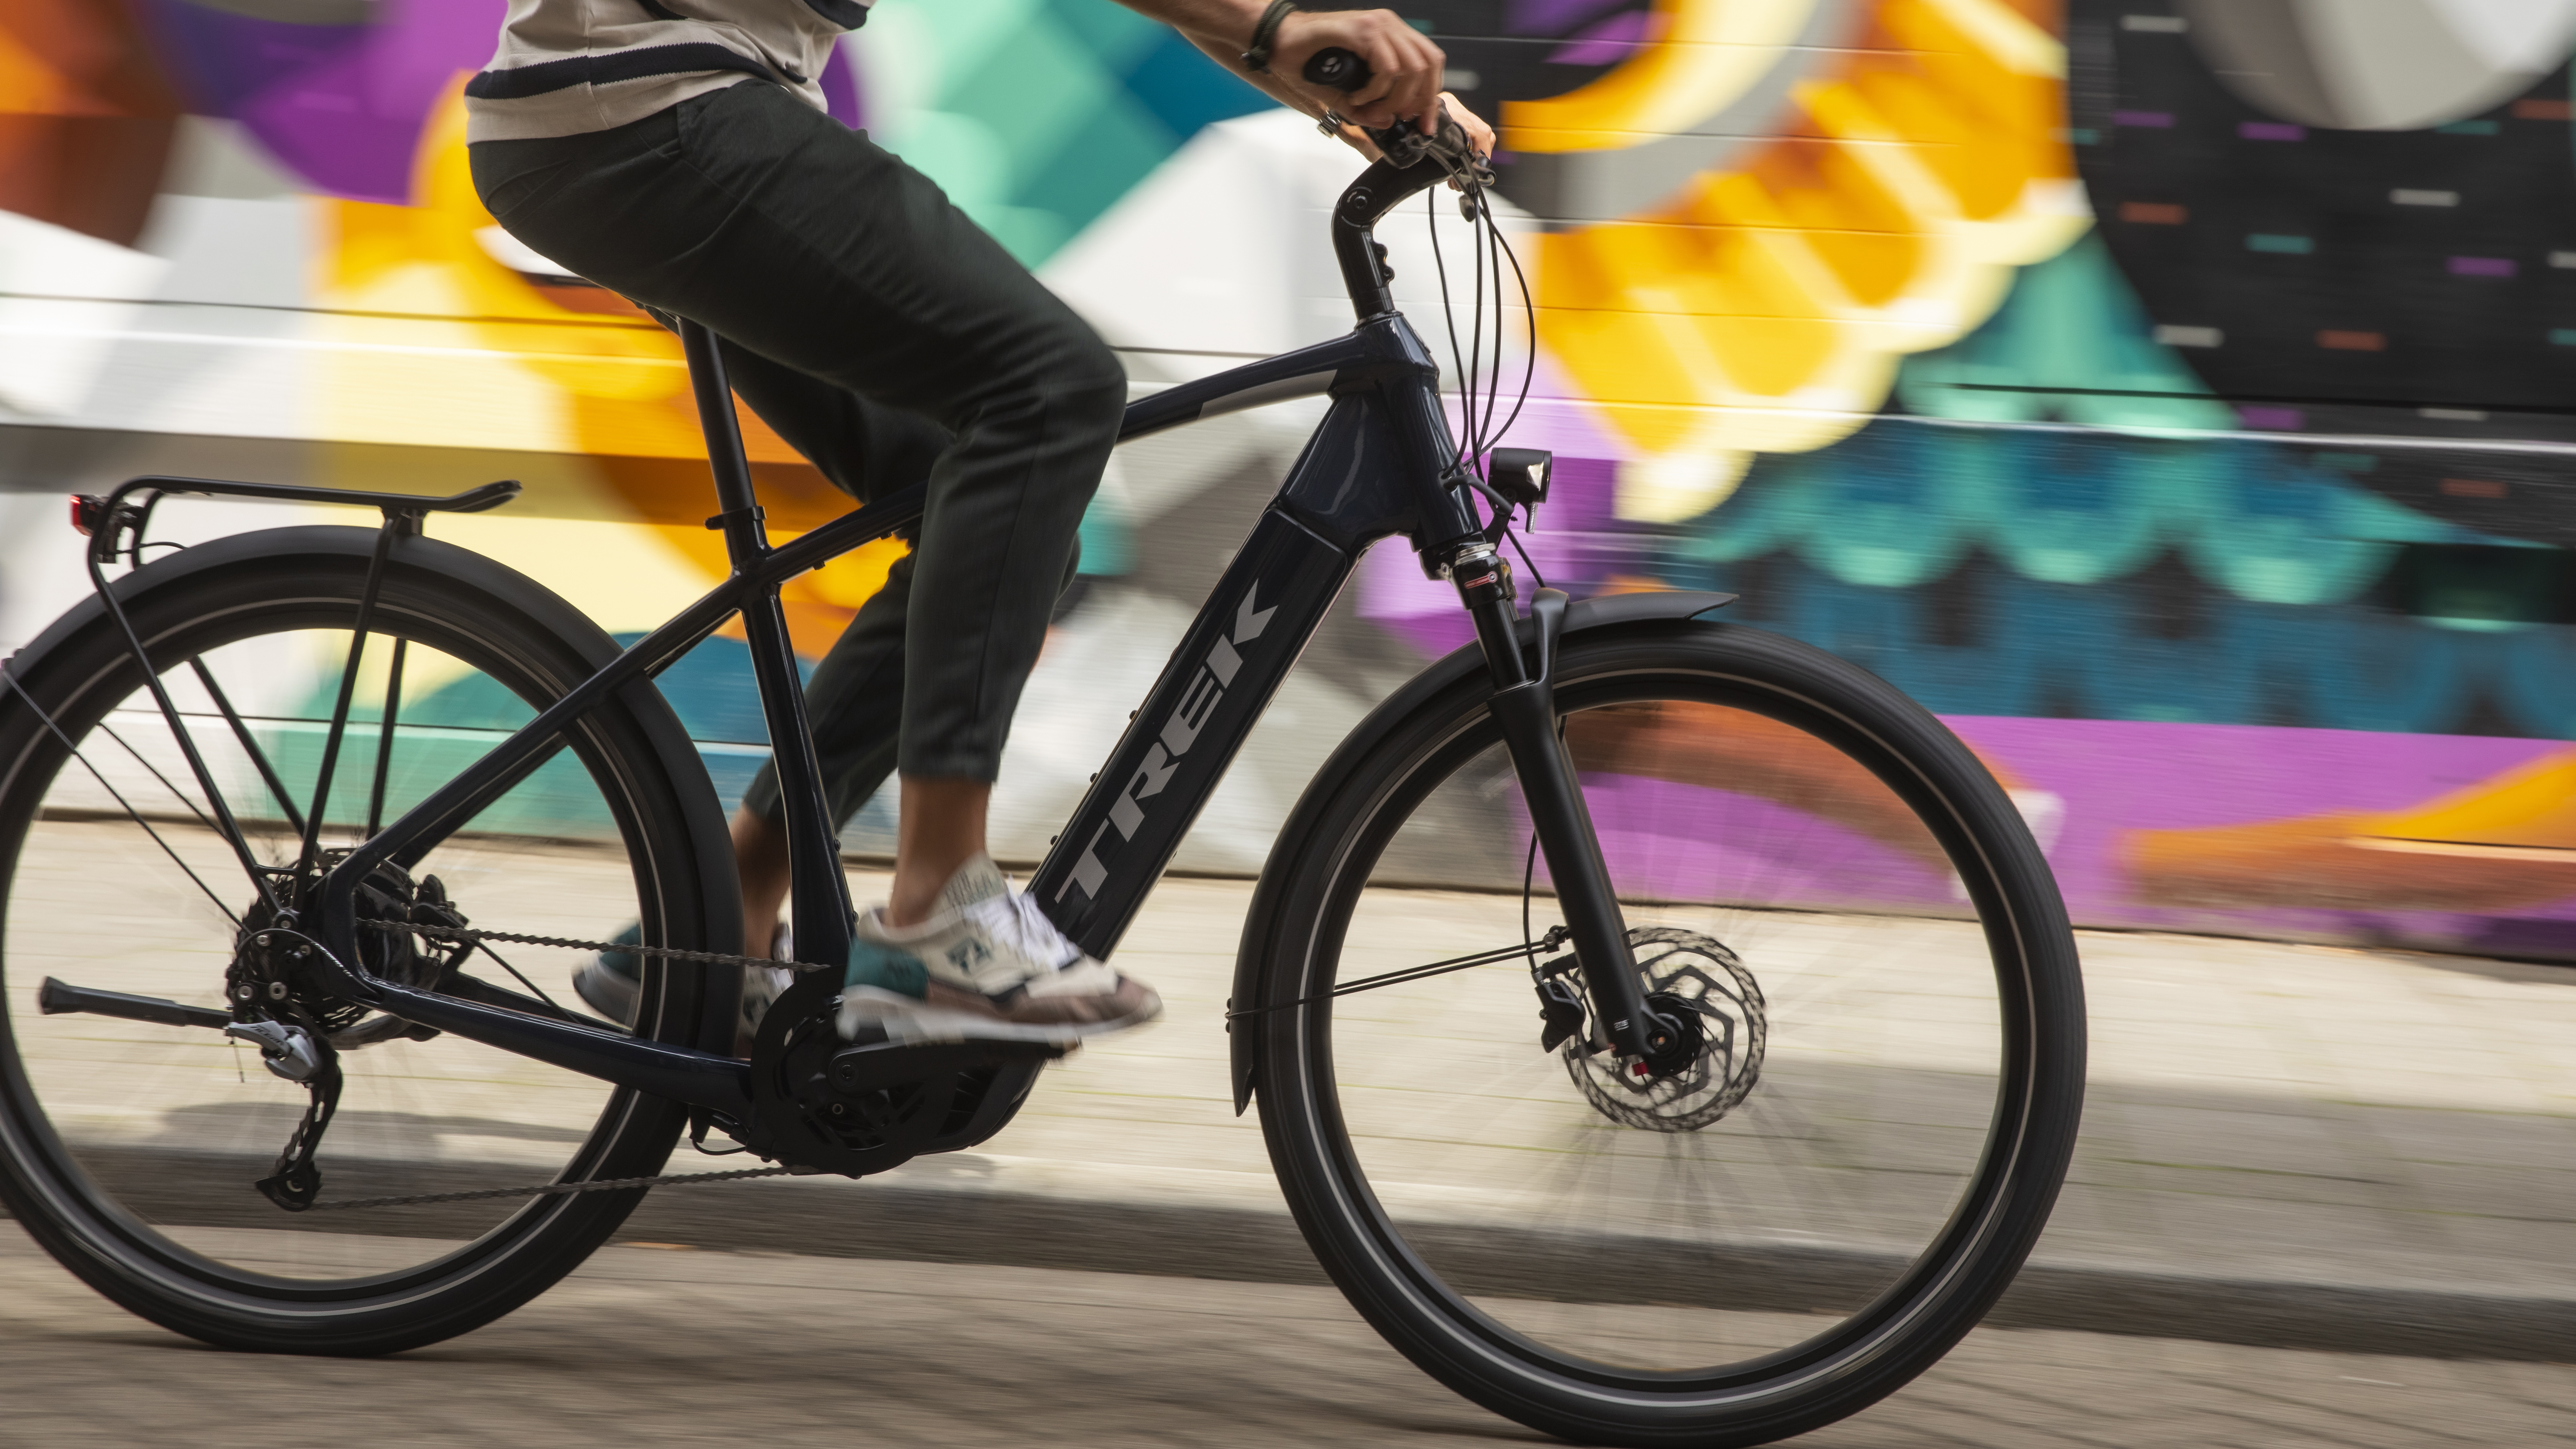 Labe Blijkbaar Academie Deze e-bike is verkozen tot dé elektrische fiets van 2020